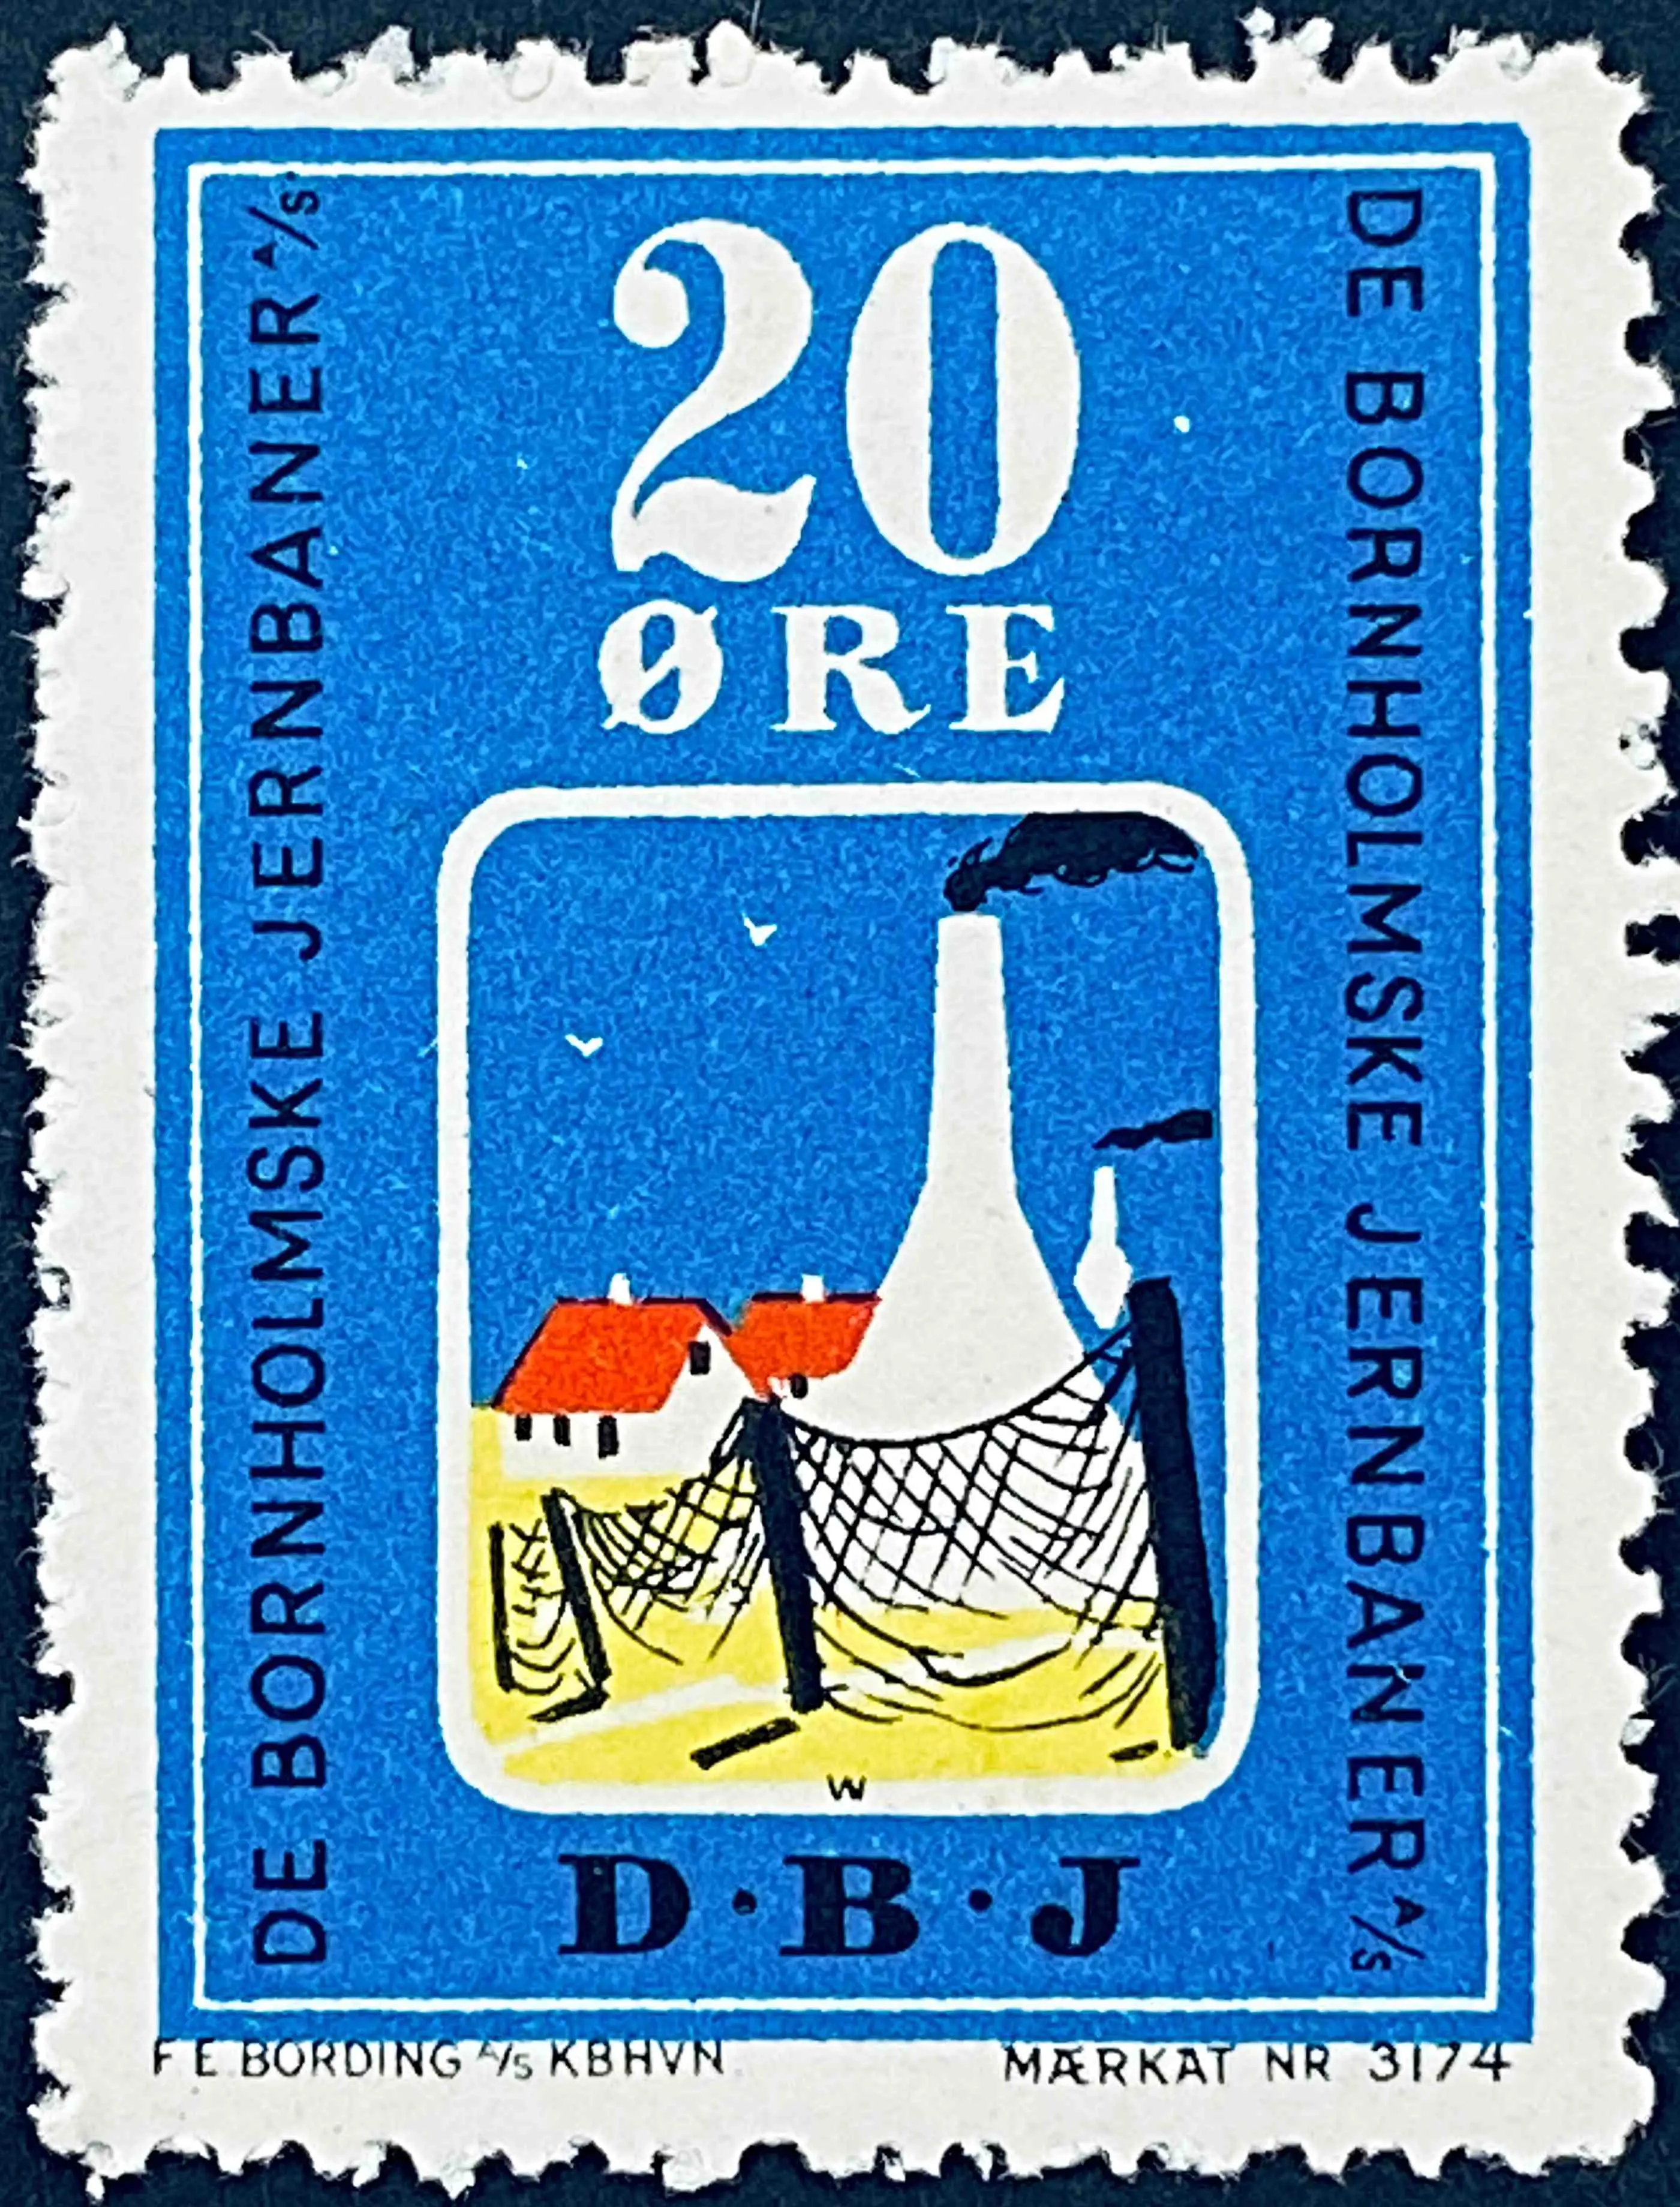 DBJ 8 - 20 Øre - Flerfarvet - trykkeri: F. E. Bording med mærke nummer: 3174.